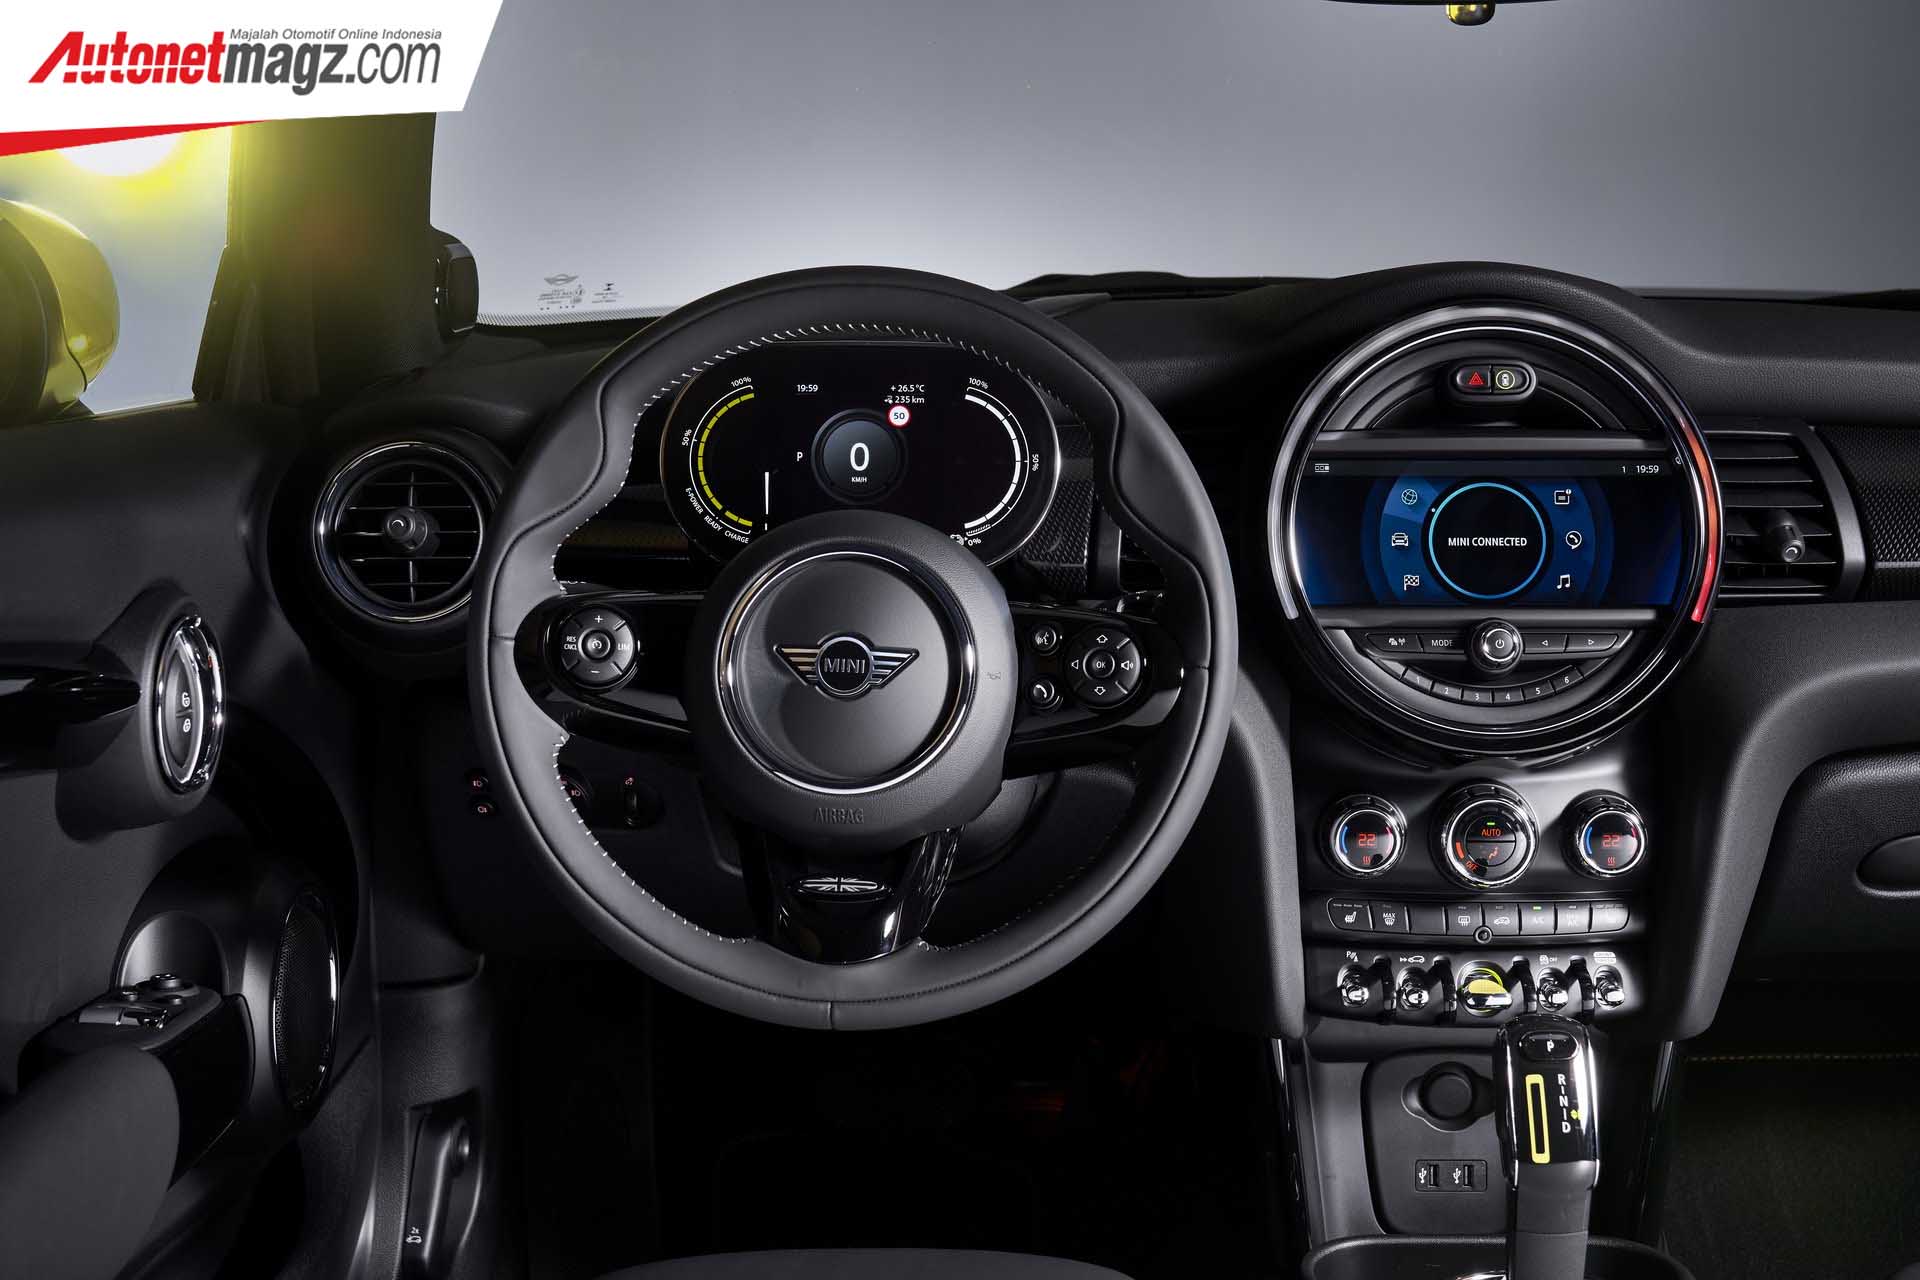 Berita, Interior MINI Cooper SE: MINI Cooper SE : Pakai Motor Listrik 181 hp & Mampu Berjalan 270 km!